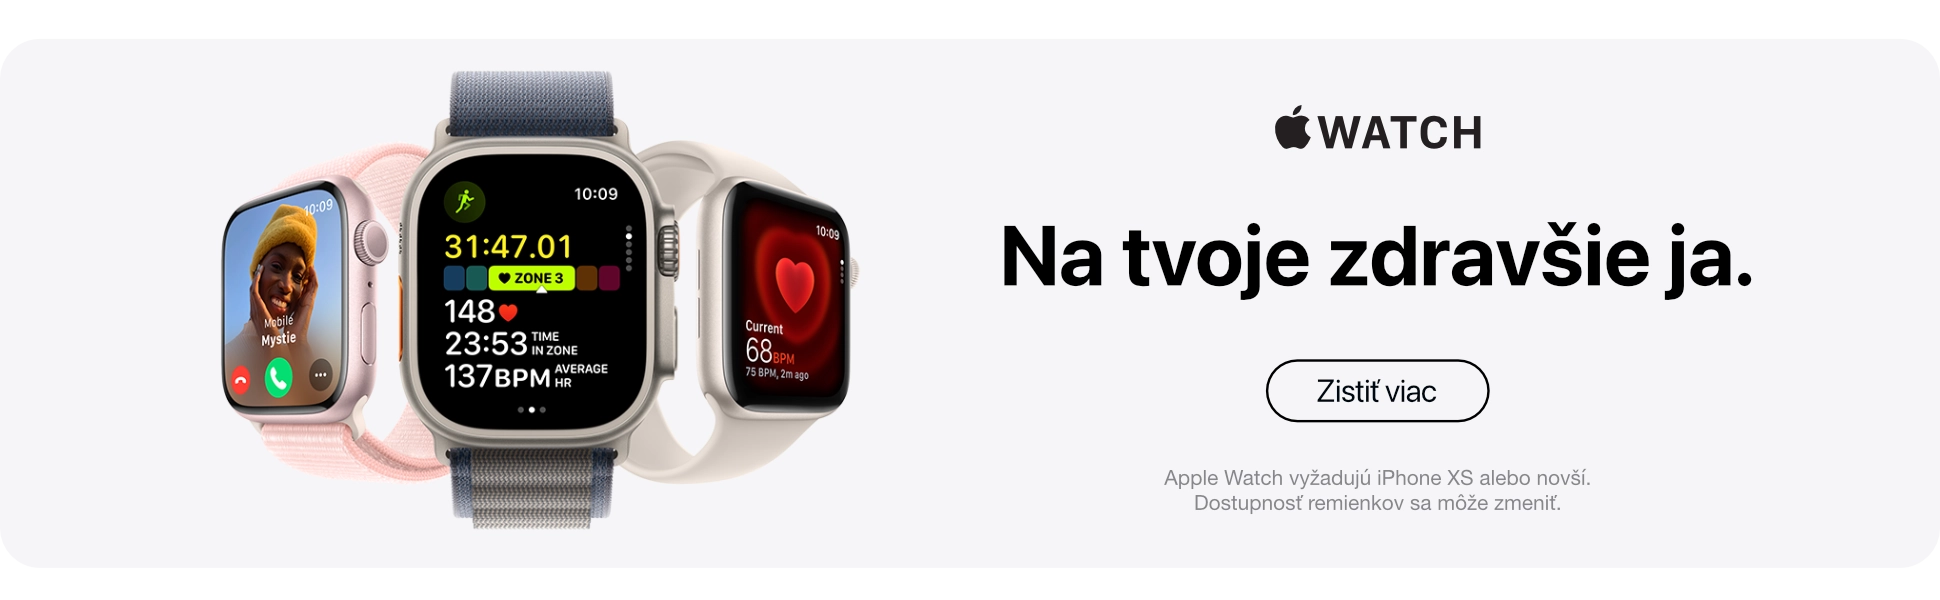 Apple watch 